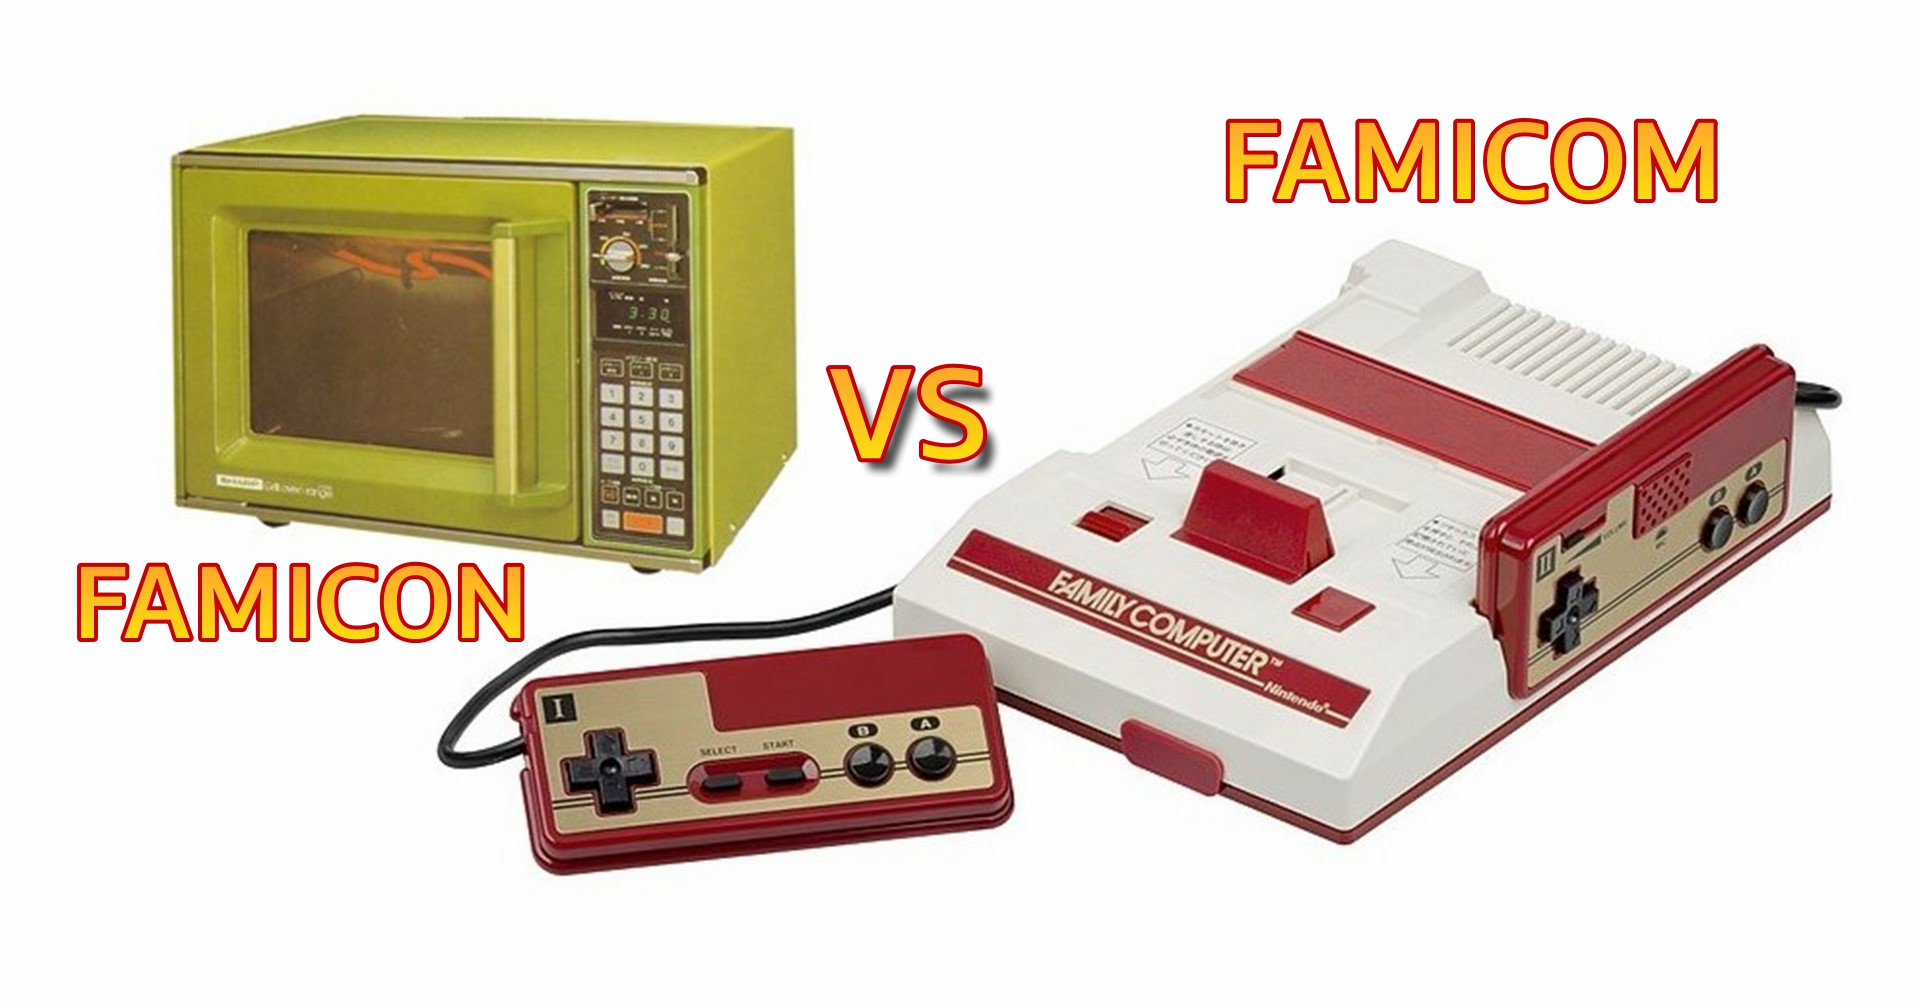 [บทความ] Famicom ชื่อคอนโซลในตำนานที่เกือบไม่ได้ถูกเอามาใช้